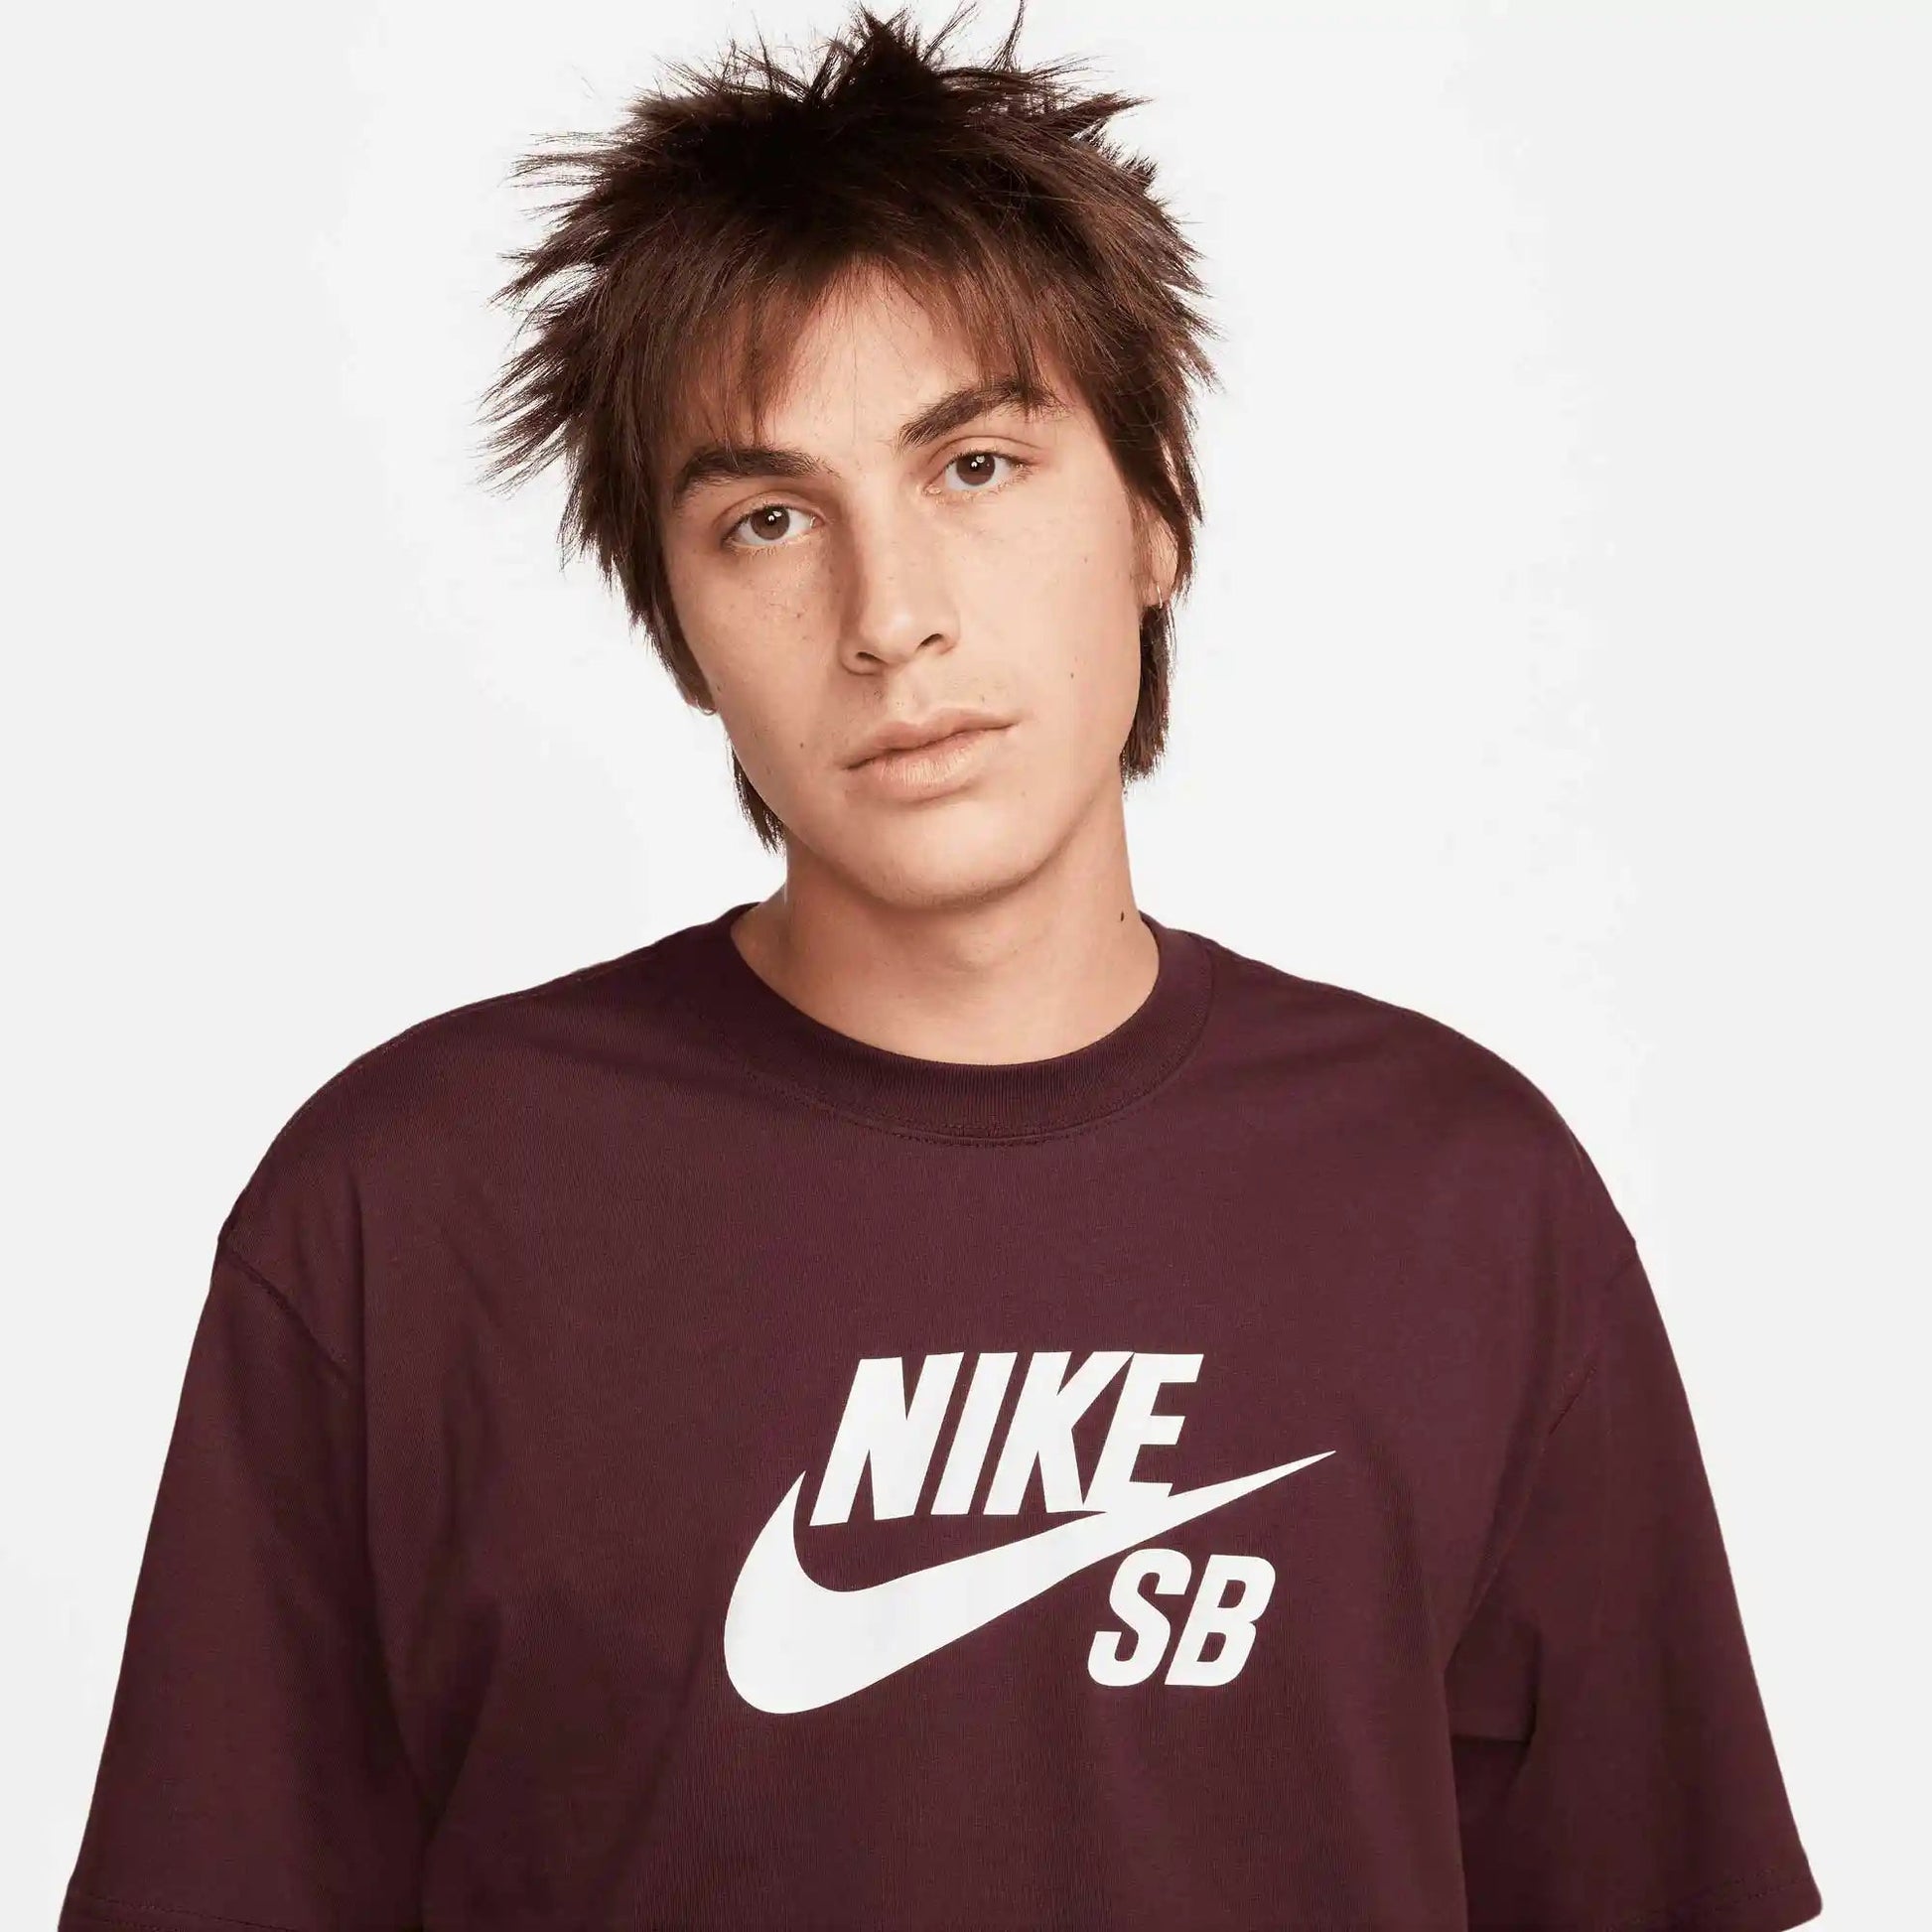 Nike SB Logo Skate T-Shirt, burgundy crush/white - Tiki Room Skateboards - 2